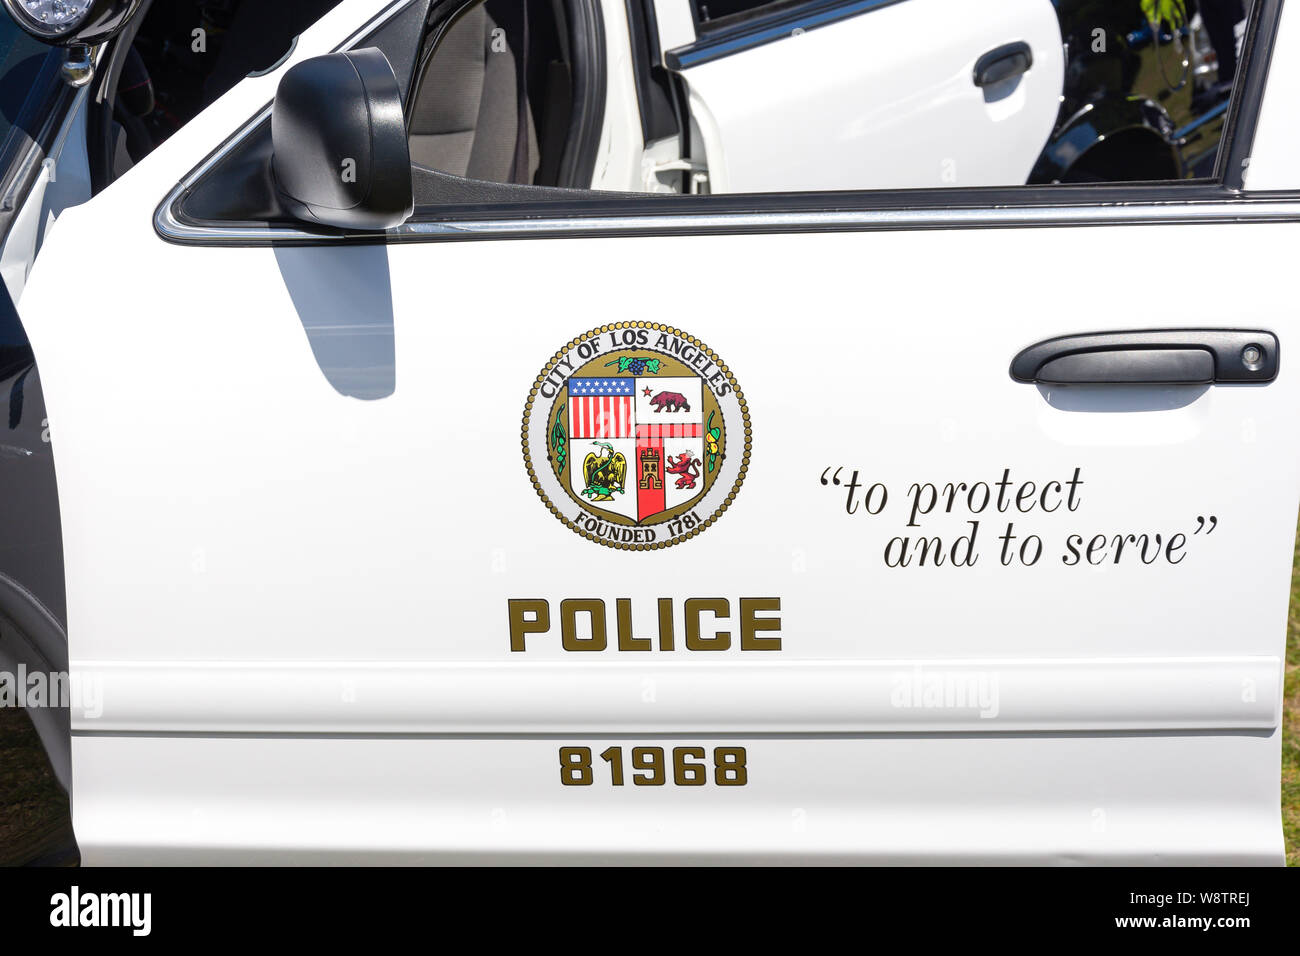 Los Angeles auto della polizia logo, Marina del Rey, Los Angeles, California, Stati Uniti d'America Foto Stock